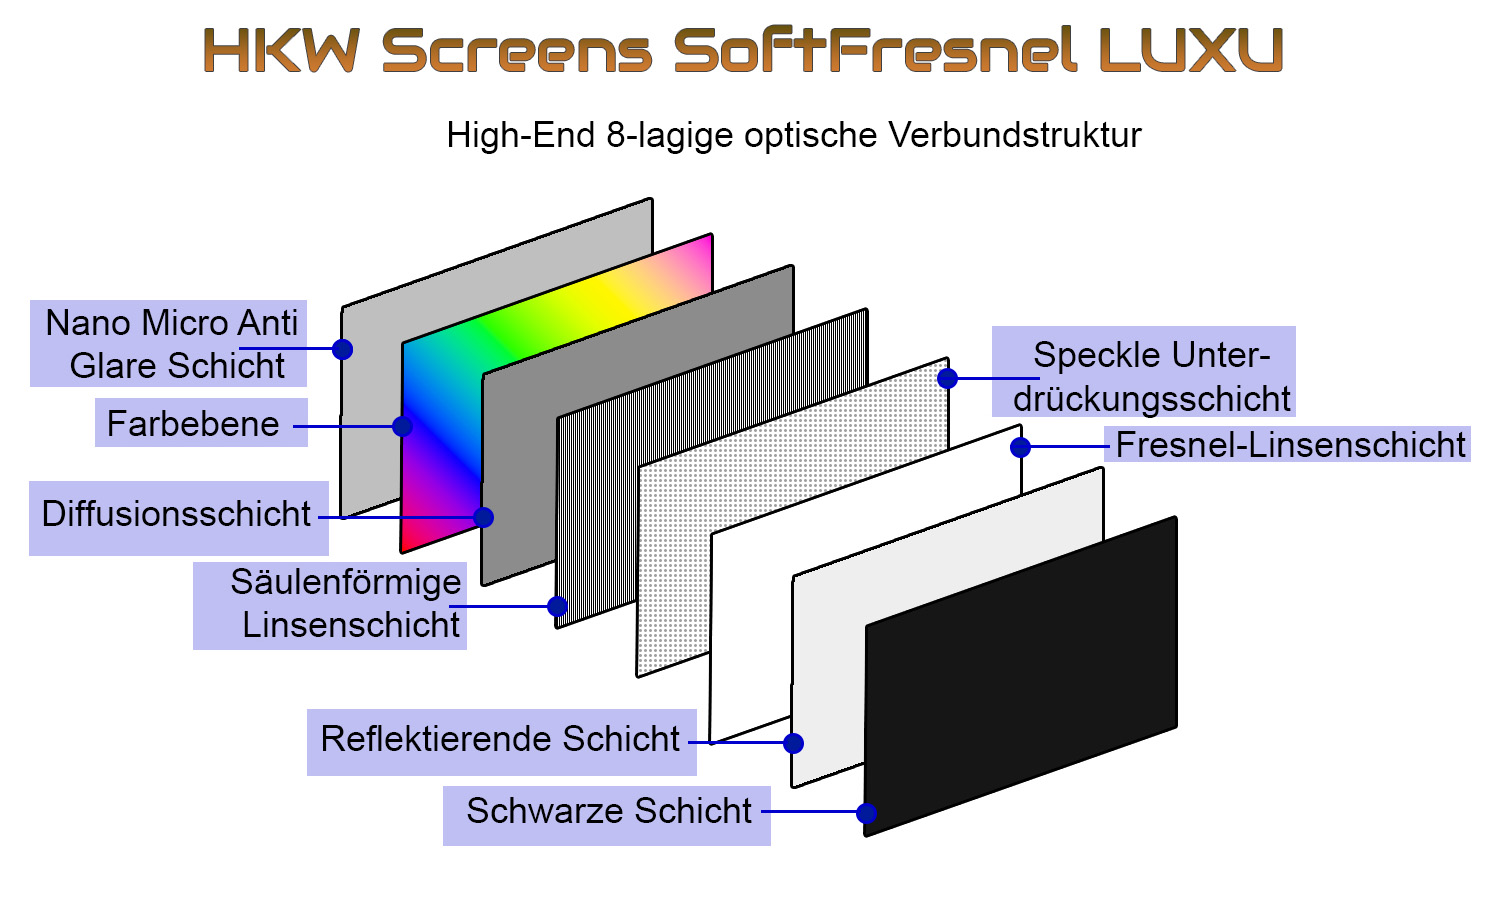 HKW Screens SoftFresnel LUXU